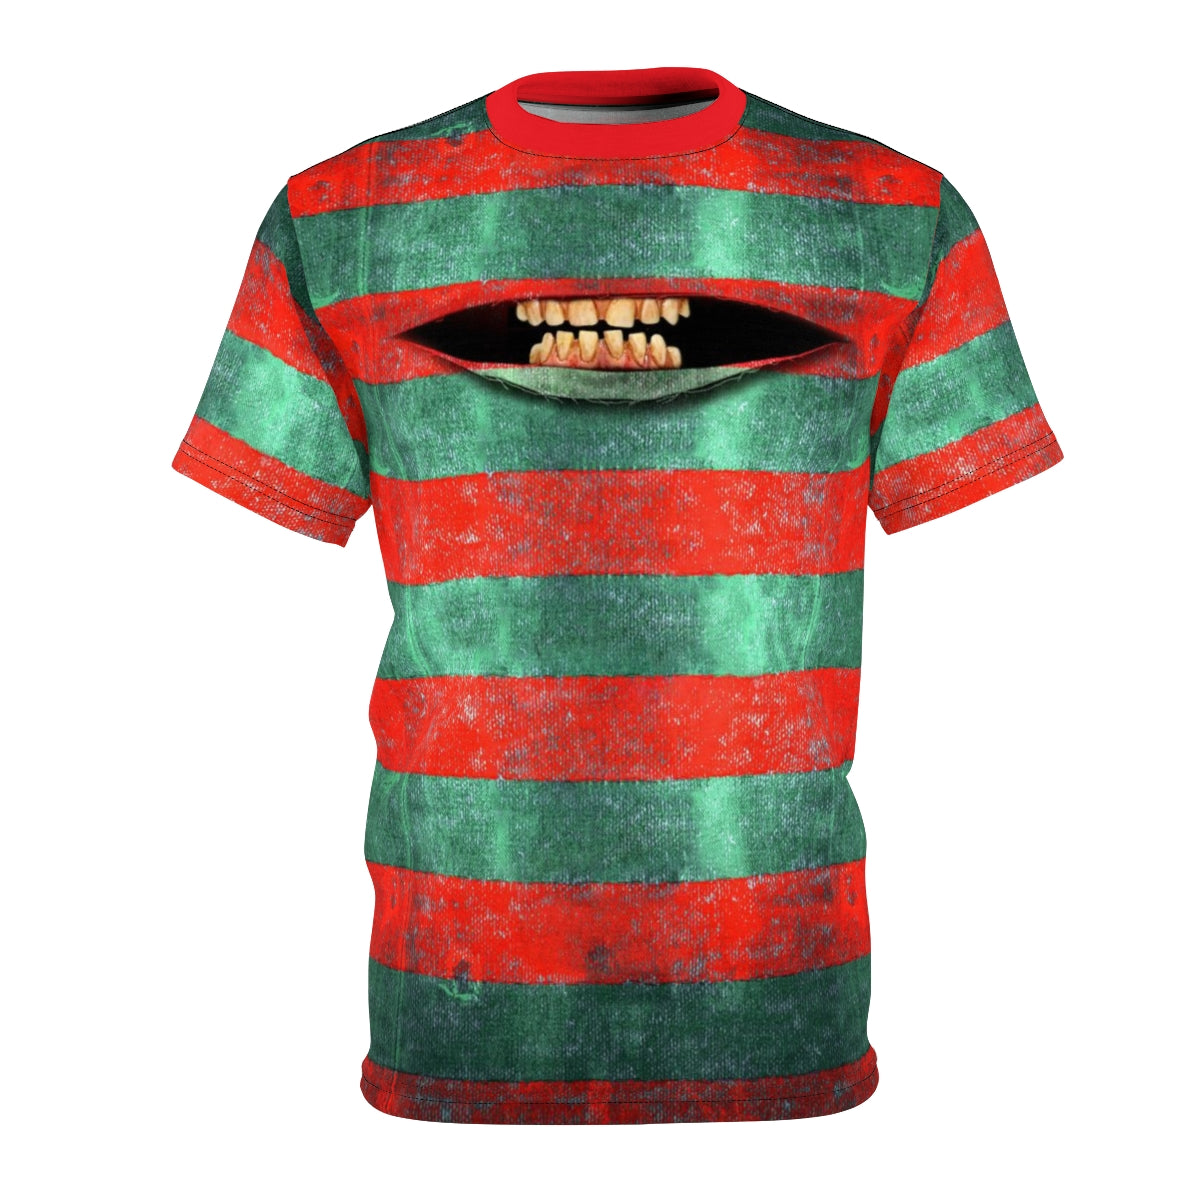 Freddy's Smile - Krueger 's Teeth Horror Freak T-shirt